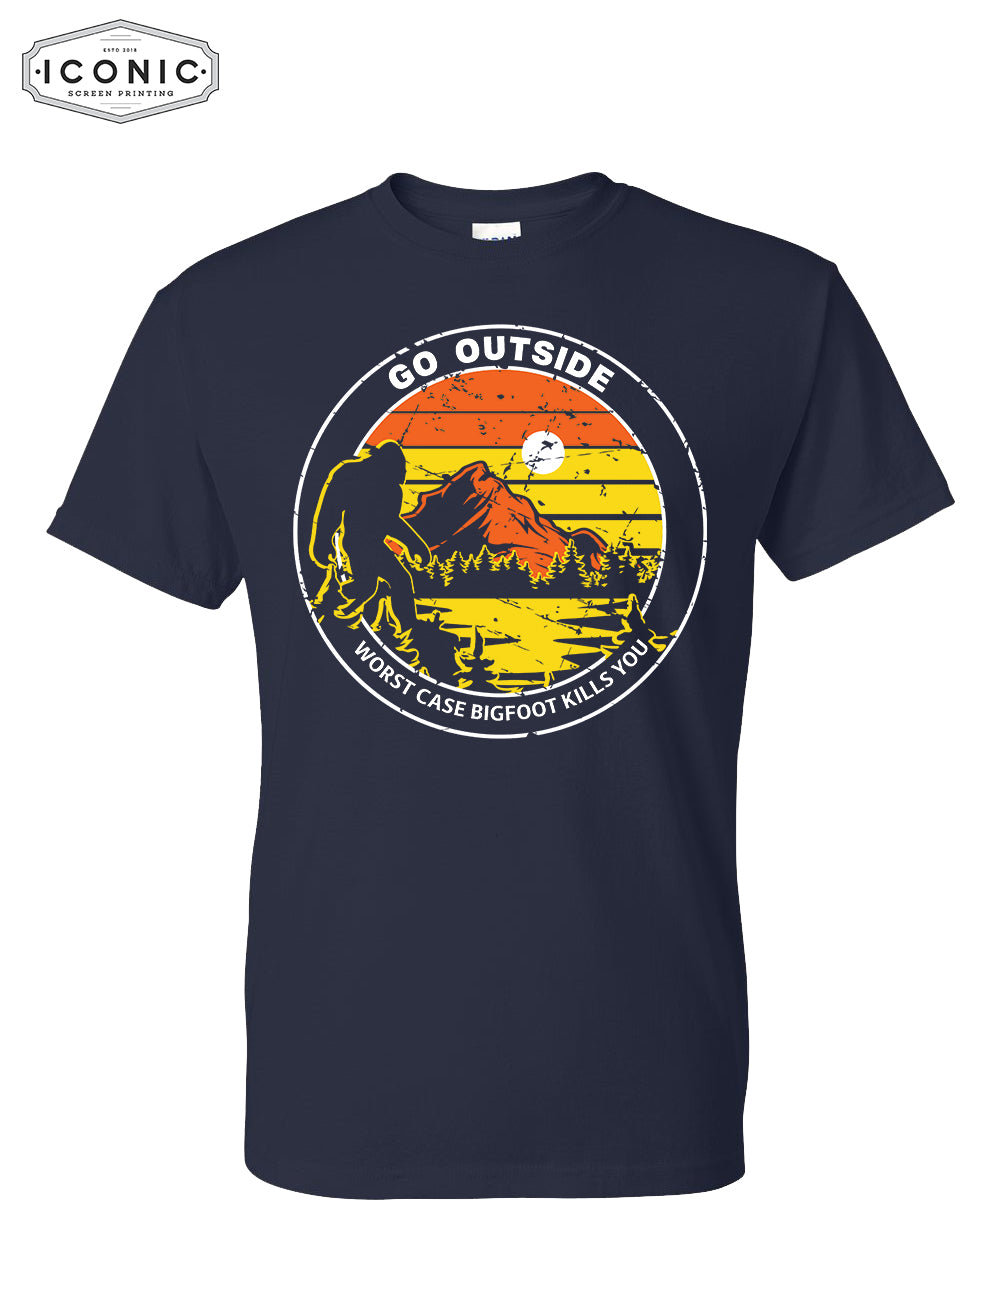 Go Outside - DryBlend T-shirt